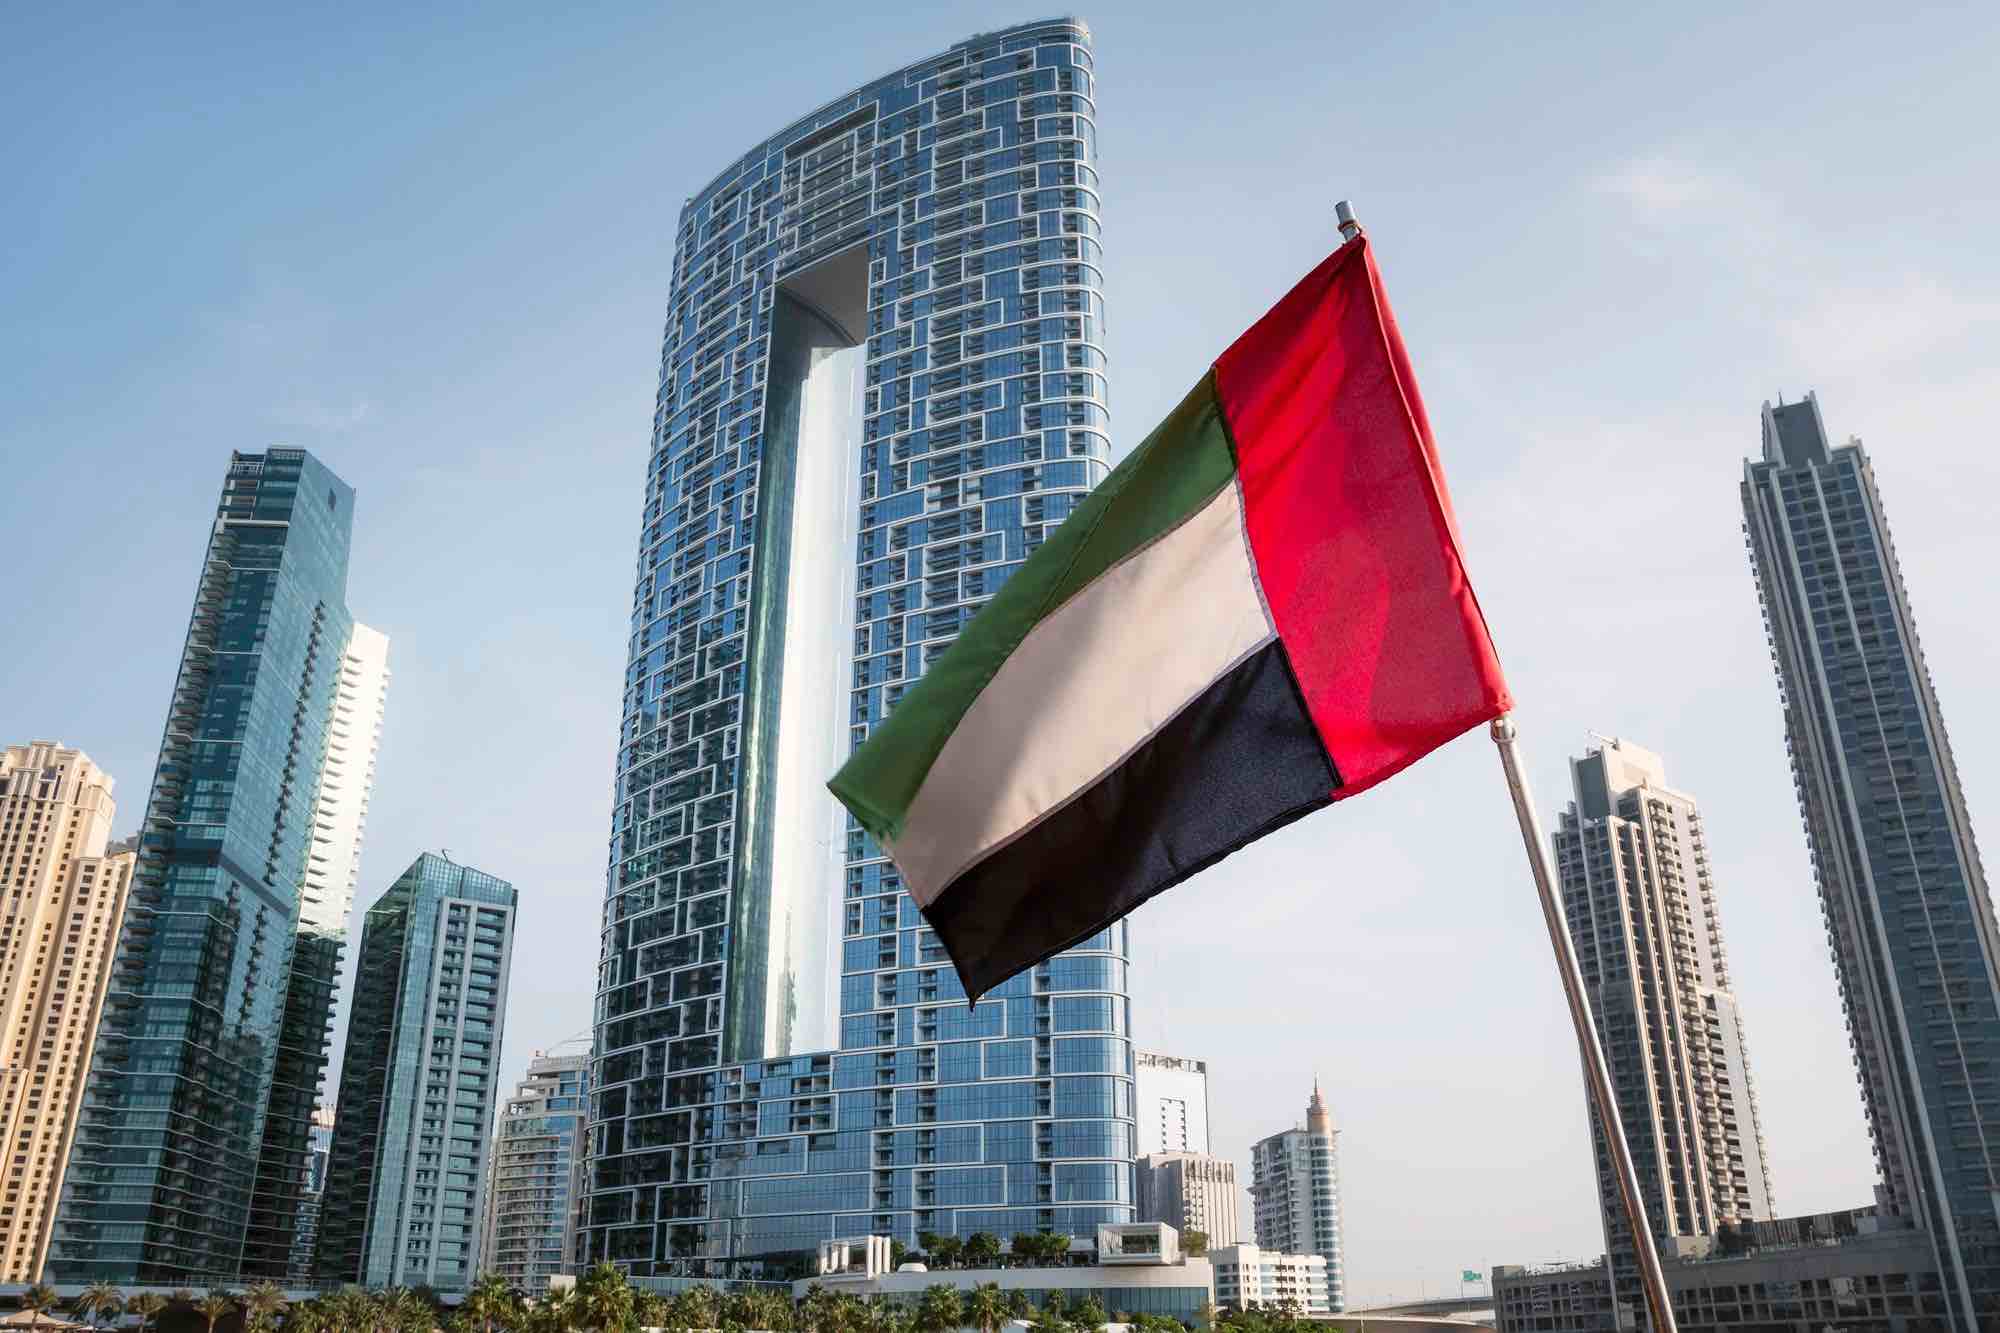 الإمارات تبتكر في مجال الخدمات الحكومية بإطلاق منصة اسألنا للمحادثة الآلية الموحدة